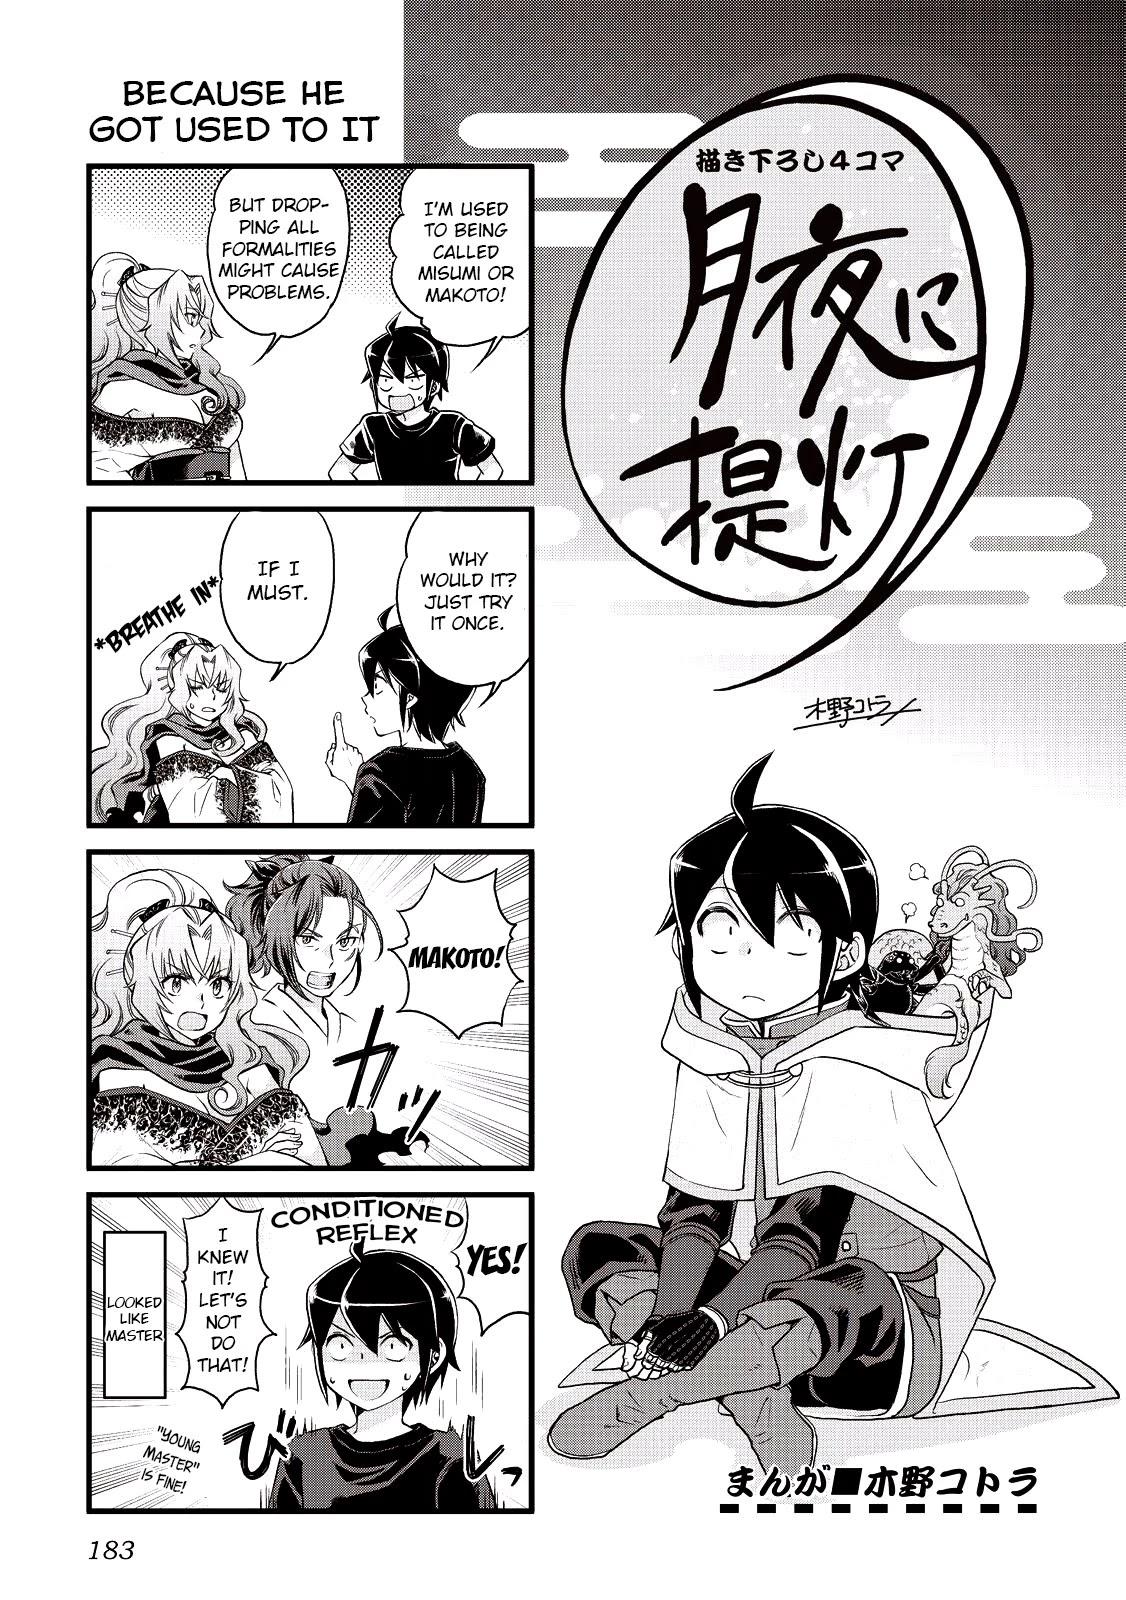 Read Tsuki Ga Michibiku Isekai Douchuu Chapter 60: Curry And Rice? on  Mangakakalot